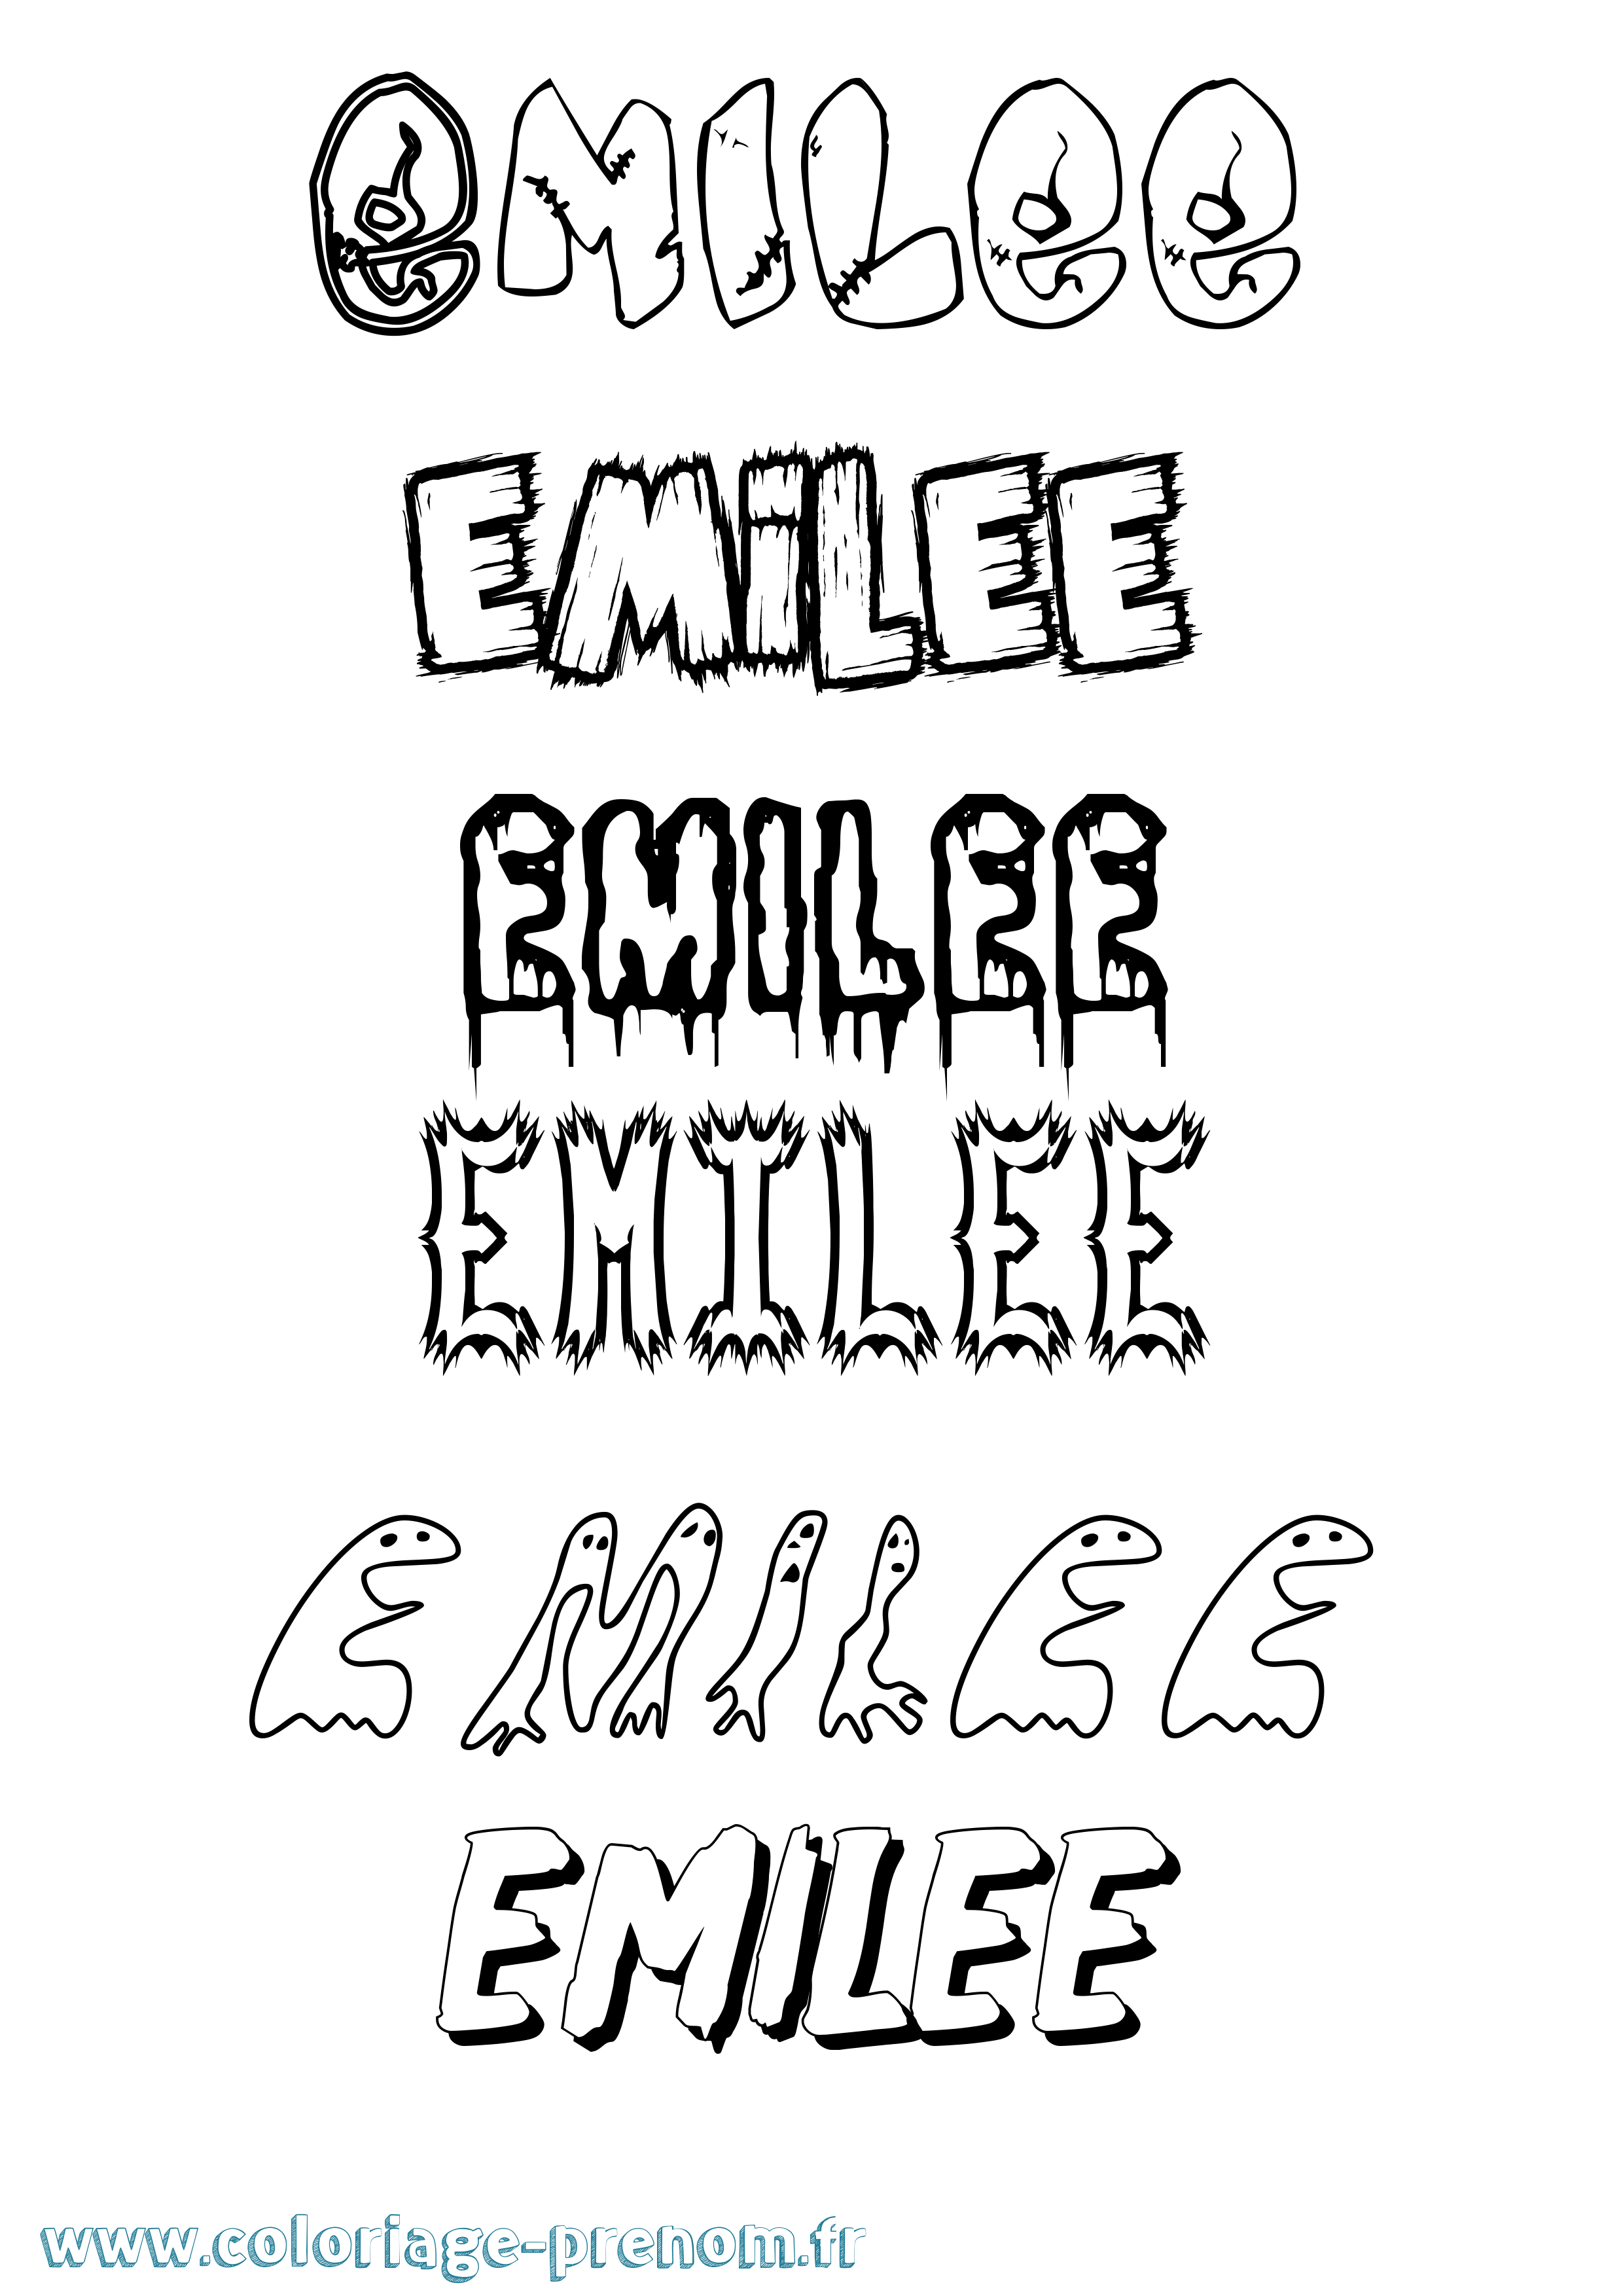 Coloriage prénom Emilee Frisson